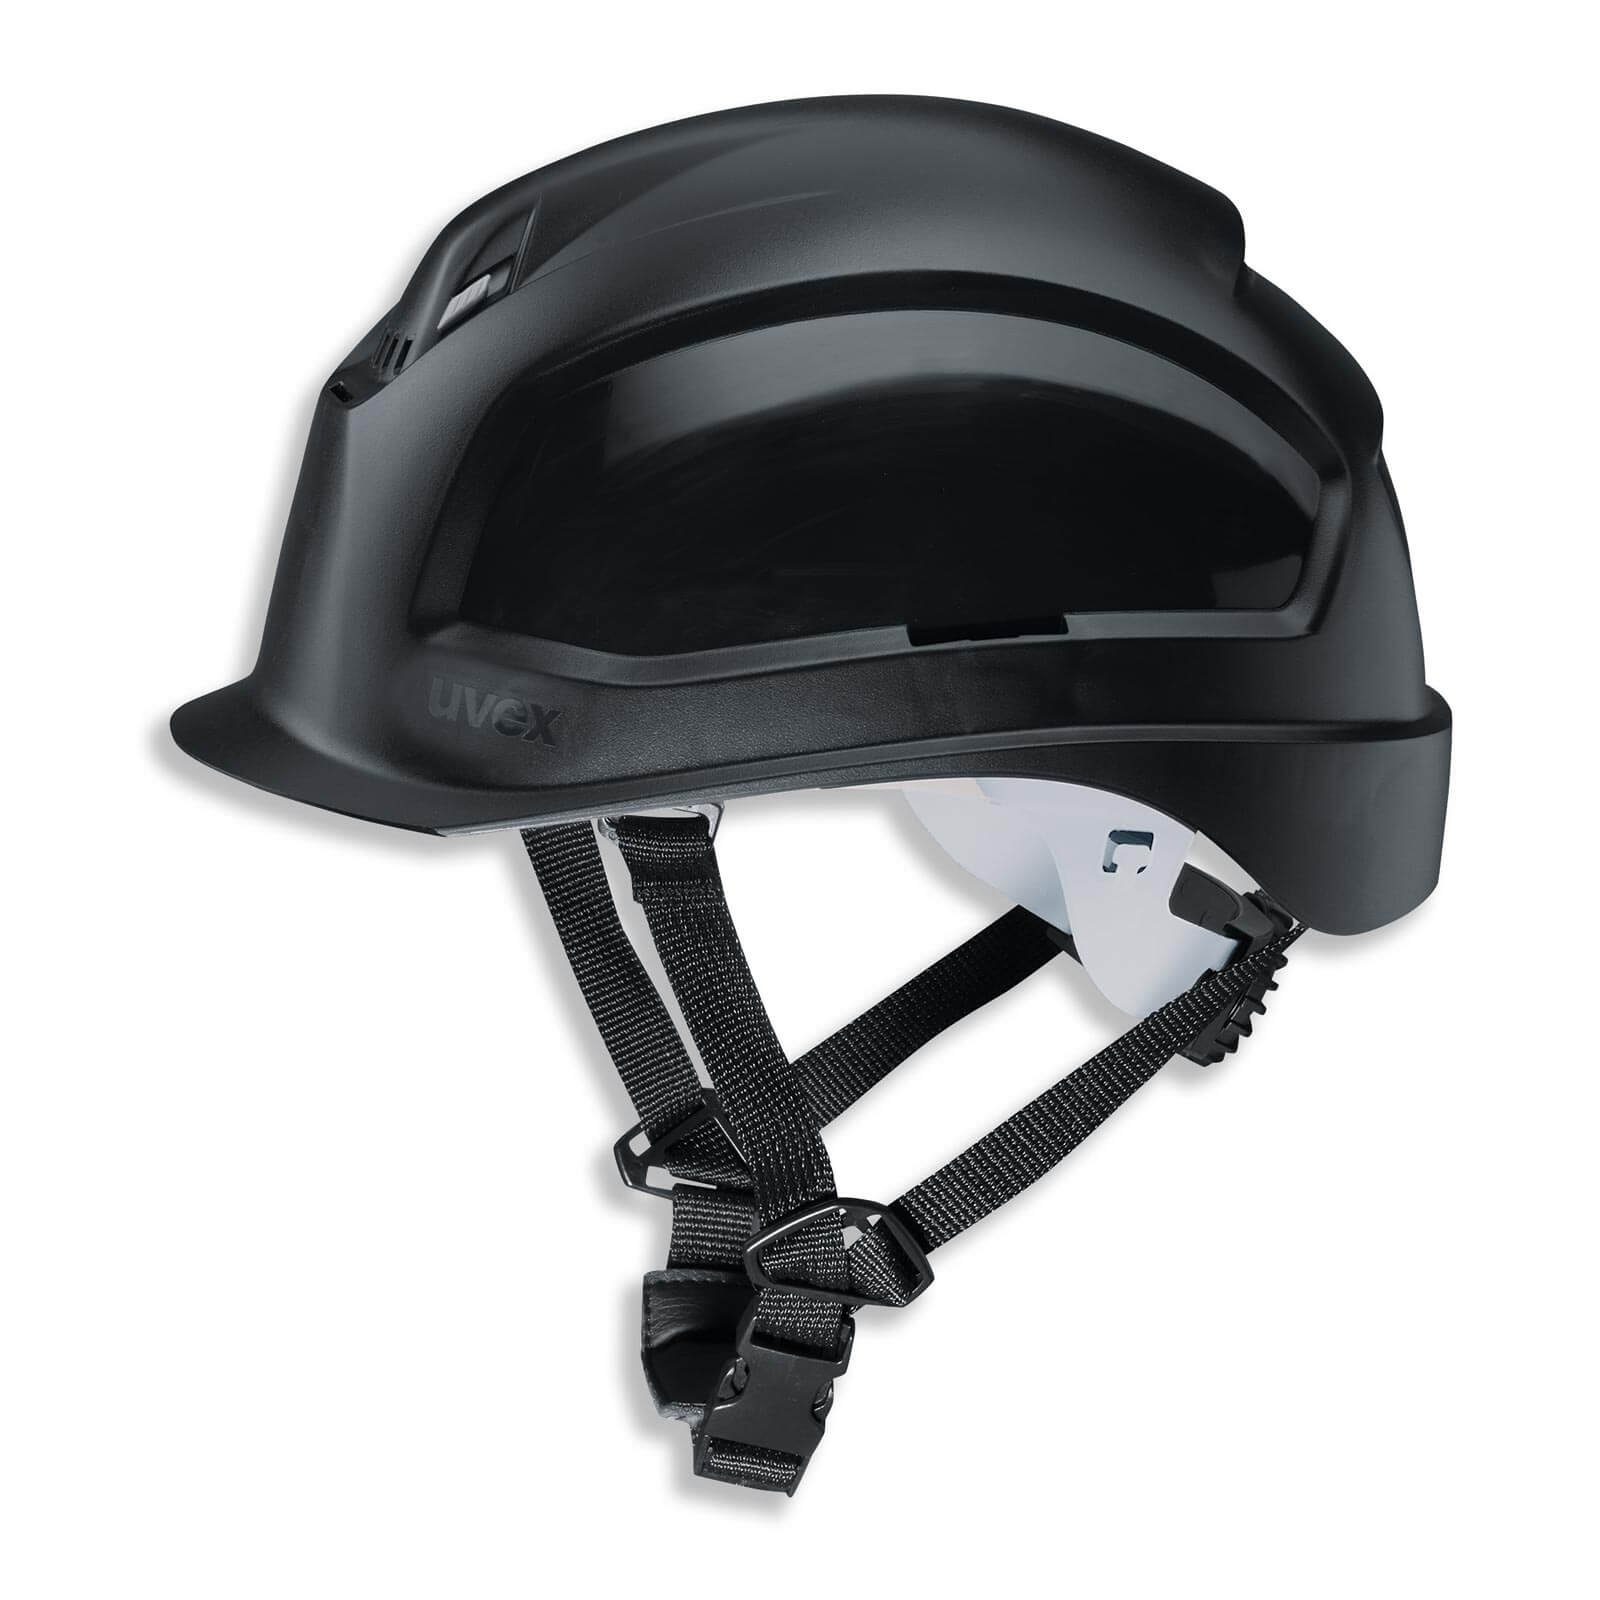 schwarz - Arbeitsschutz-Helm S-KR 4-Punkt Schutzhelm Vormontierter Kinnriemen Uvex pheos -